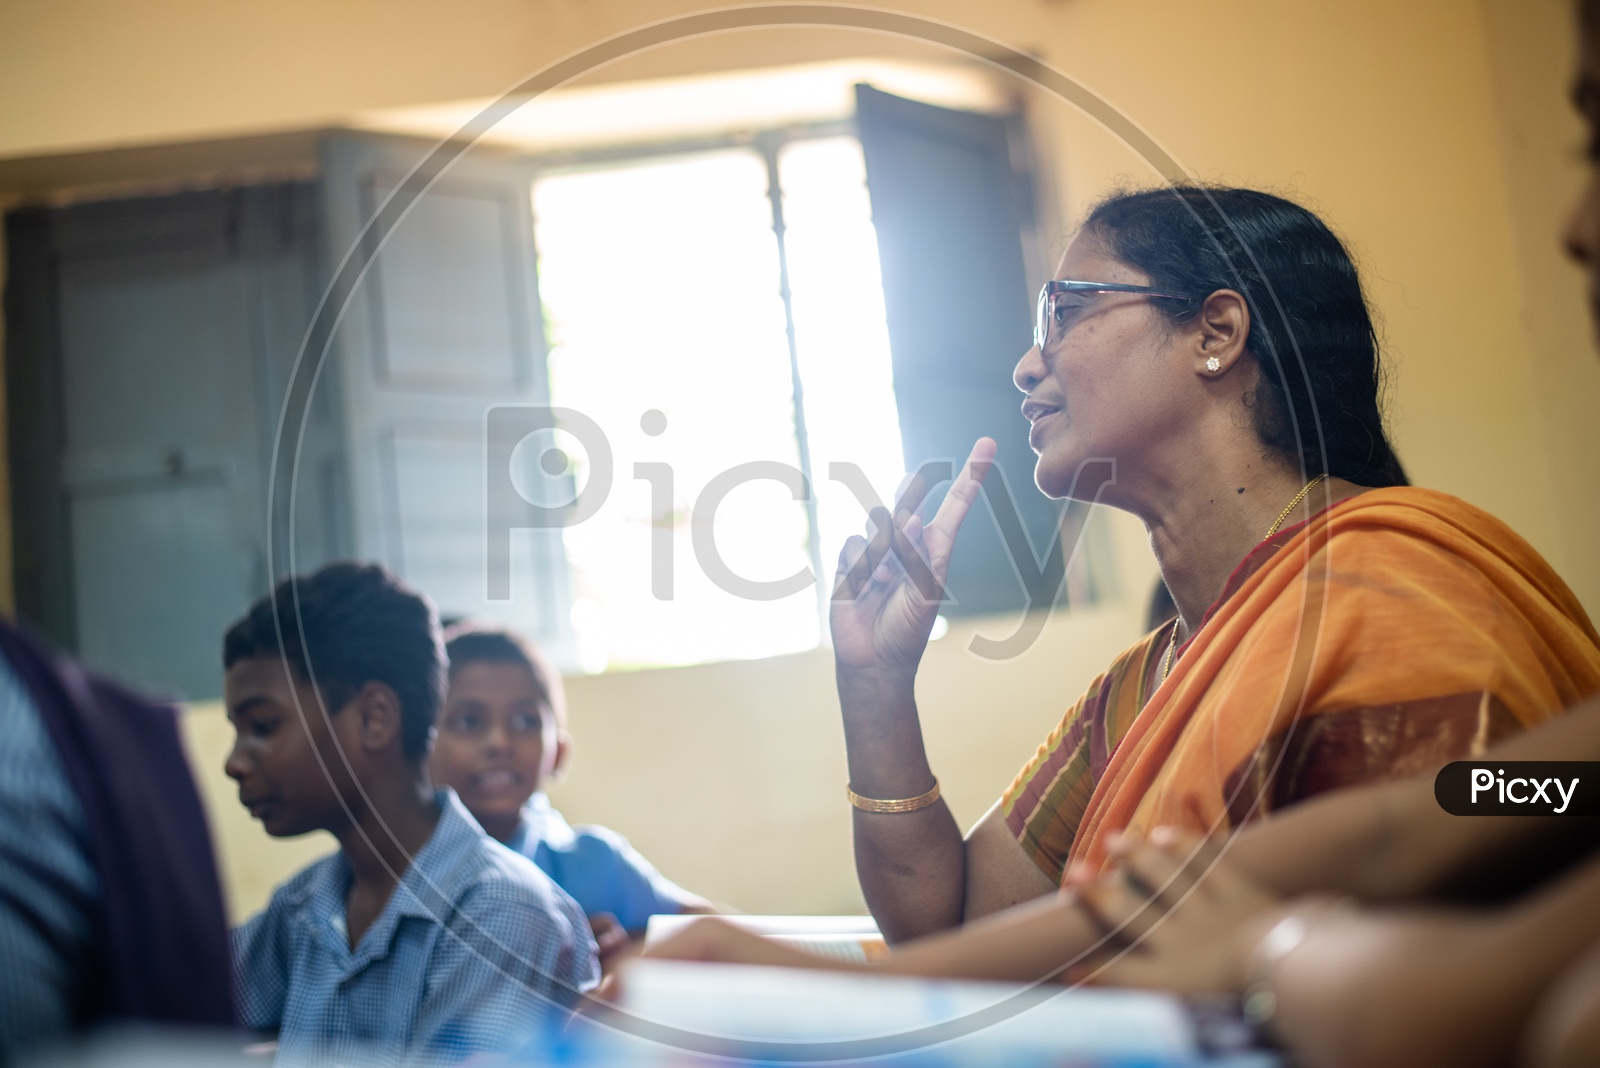 A Teacher in a Govt School